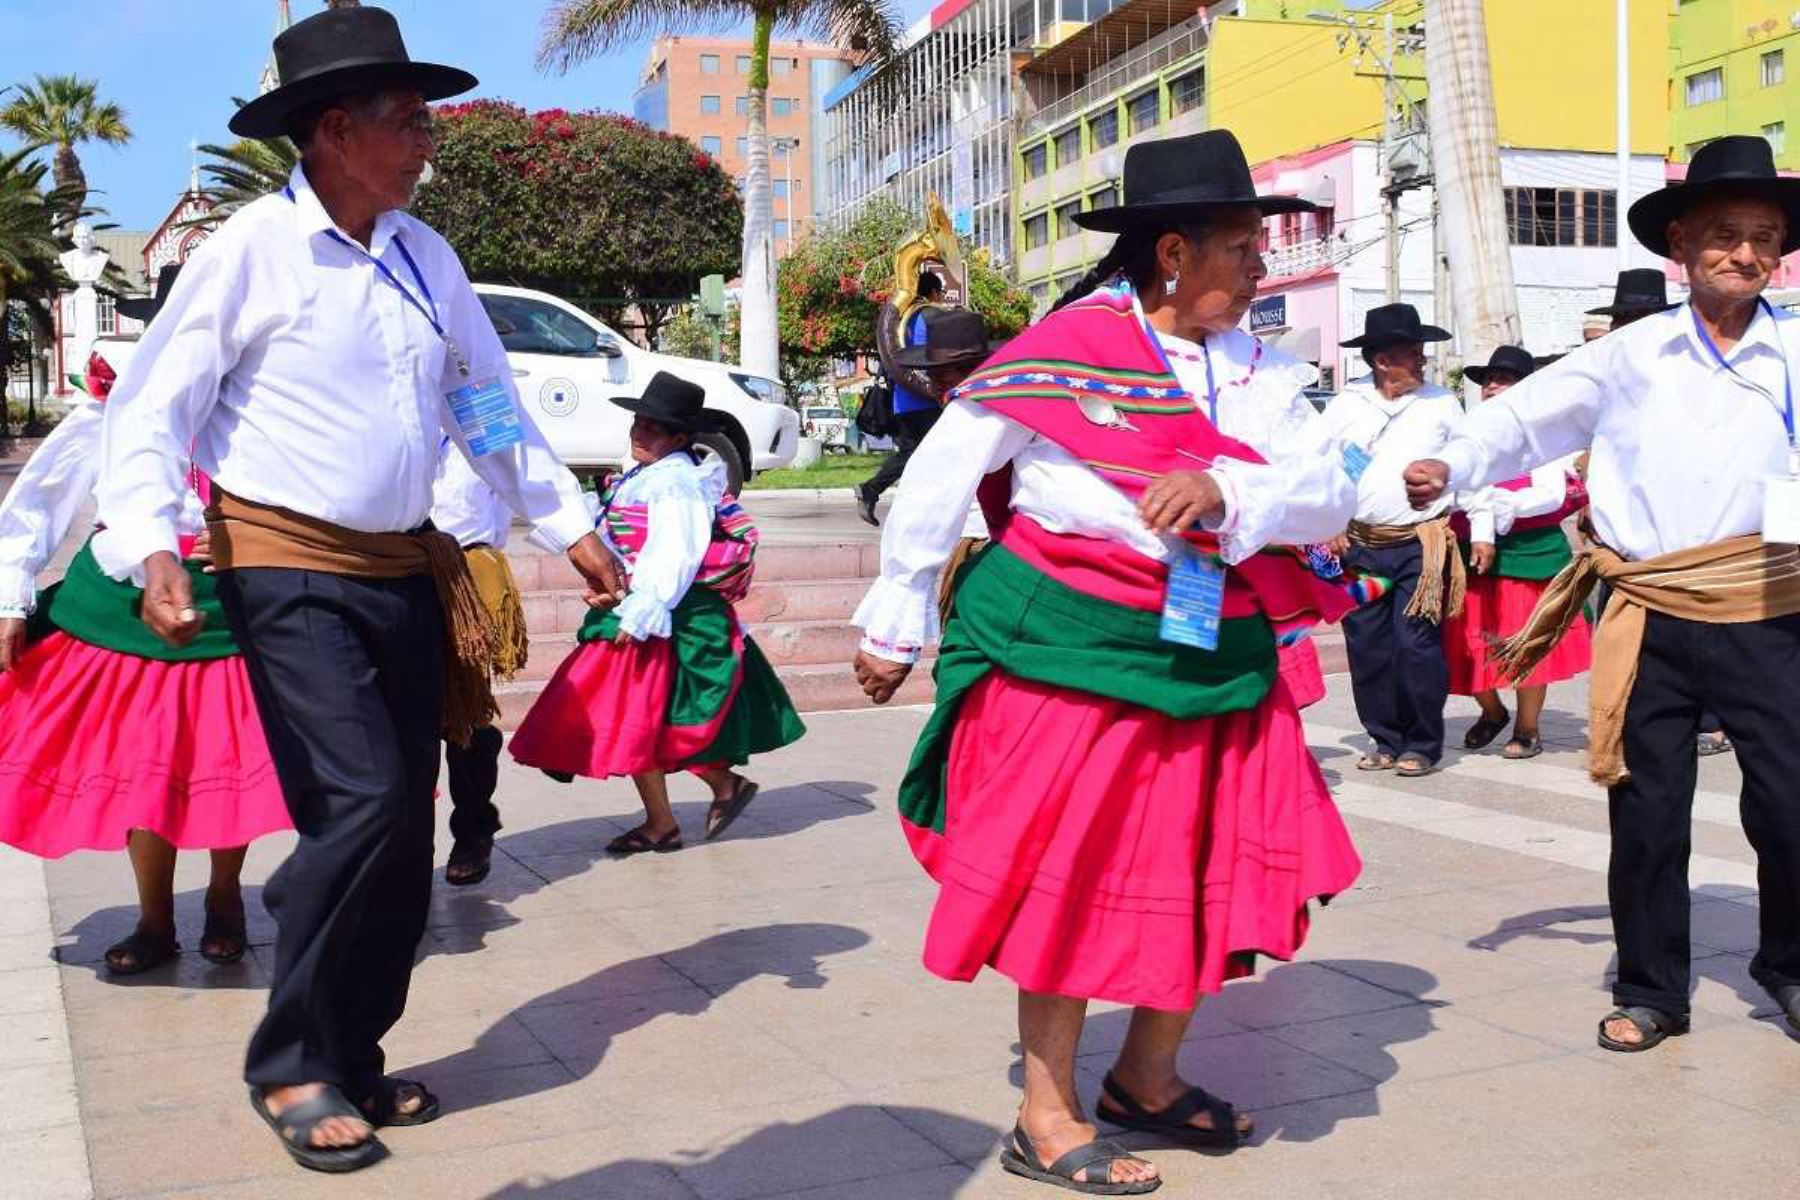 Reconocida por sus múltiples manifestaciones culturales, la región de Tacna resultó muy bien representada durante el Segundo Encuentro de Saberes Productivos Perú-Chile 2018, con la tradicional danza “La zampoñada” a cargo de las usuarias y usuarios del Programa Nacional de Asistencia Solidaria Pensión 65, del Ministerio de Desarrollo e Inclusión Social (Midis).